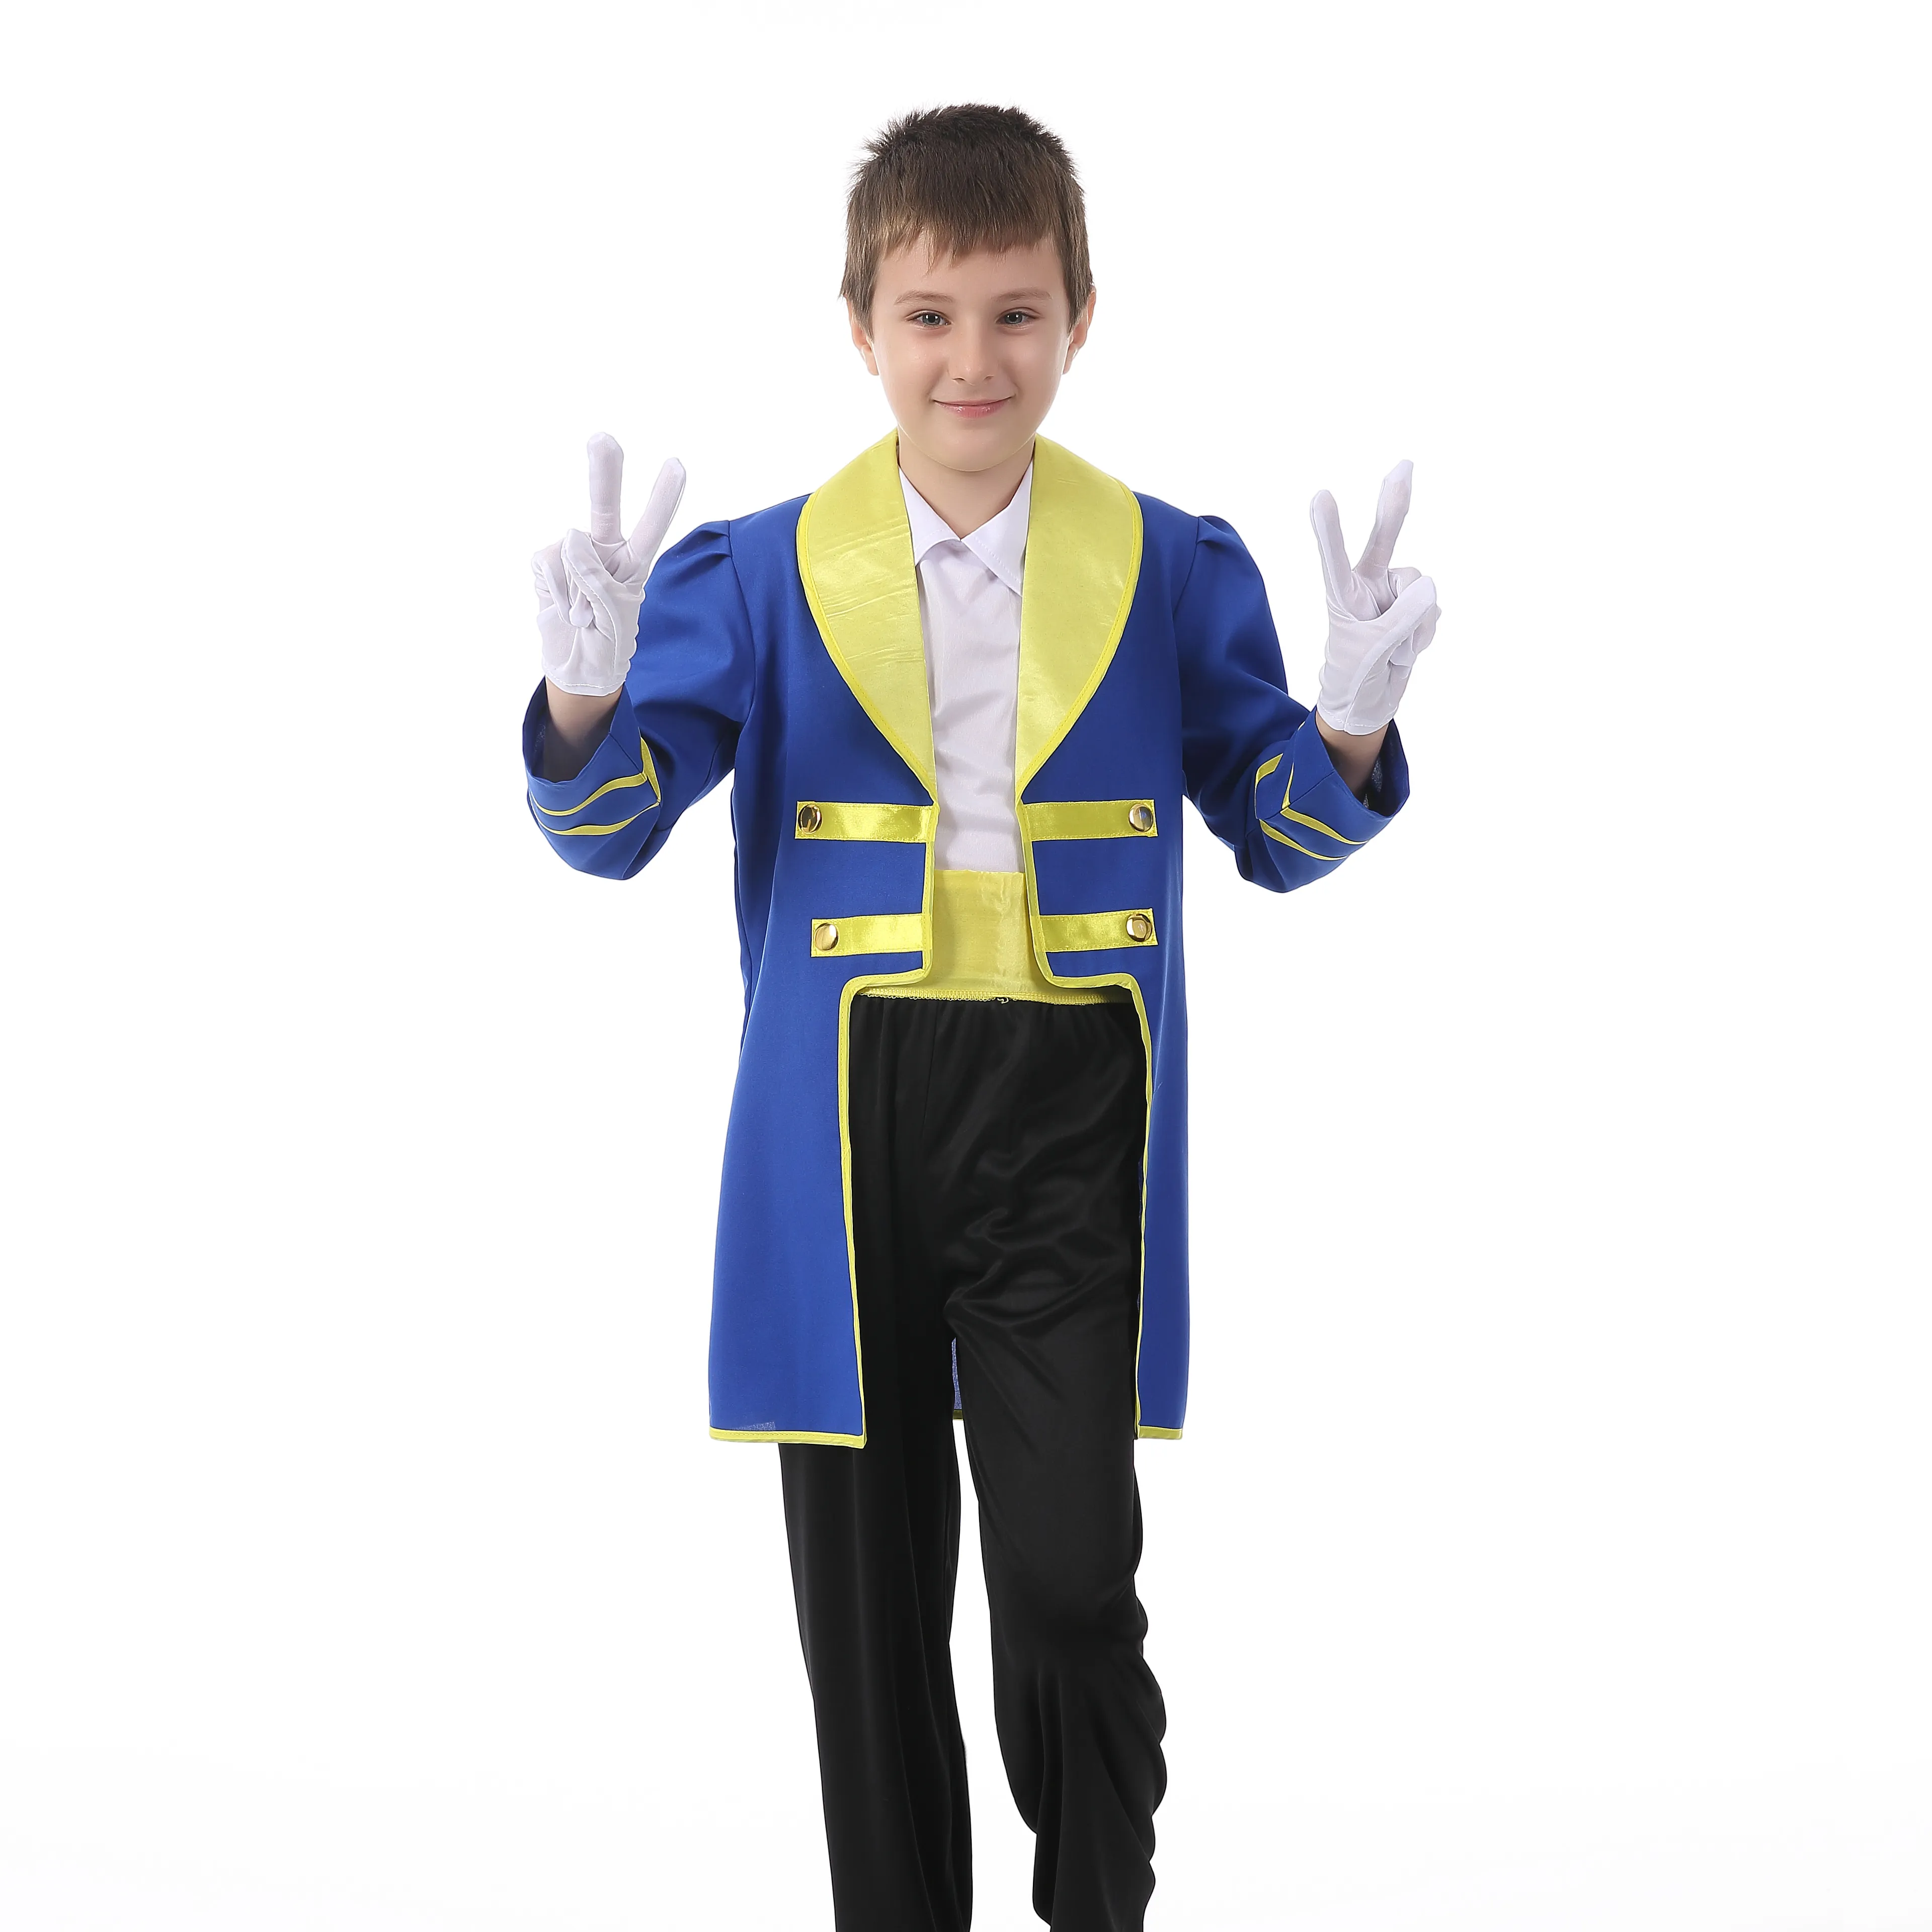 คาร์นิวัลคอสเพลย์เด็กสีฟ้าเด็กชายนักเปียโนเจ้าชายเครื่องแต่งกายพรรค-HSG19218